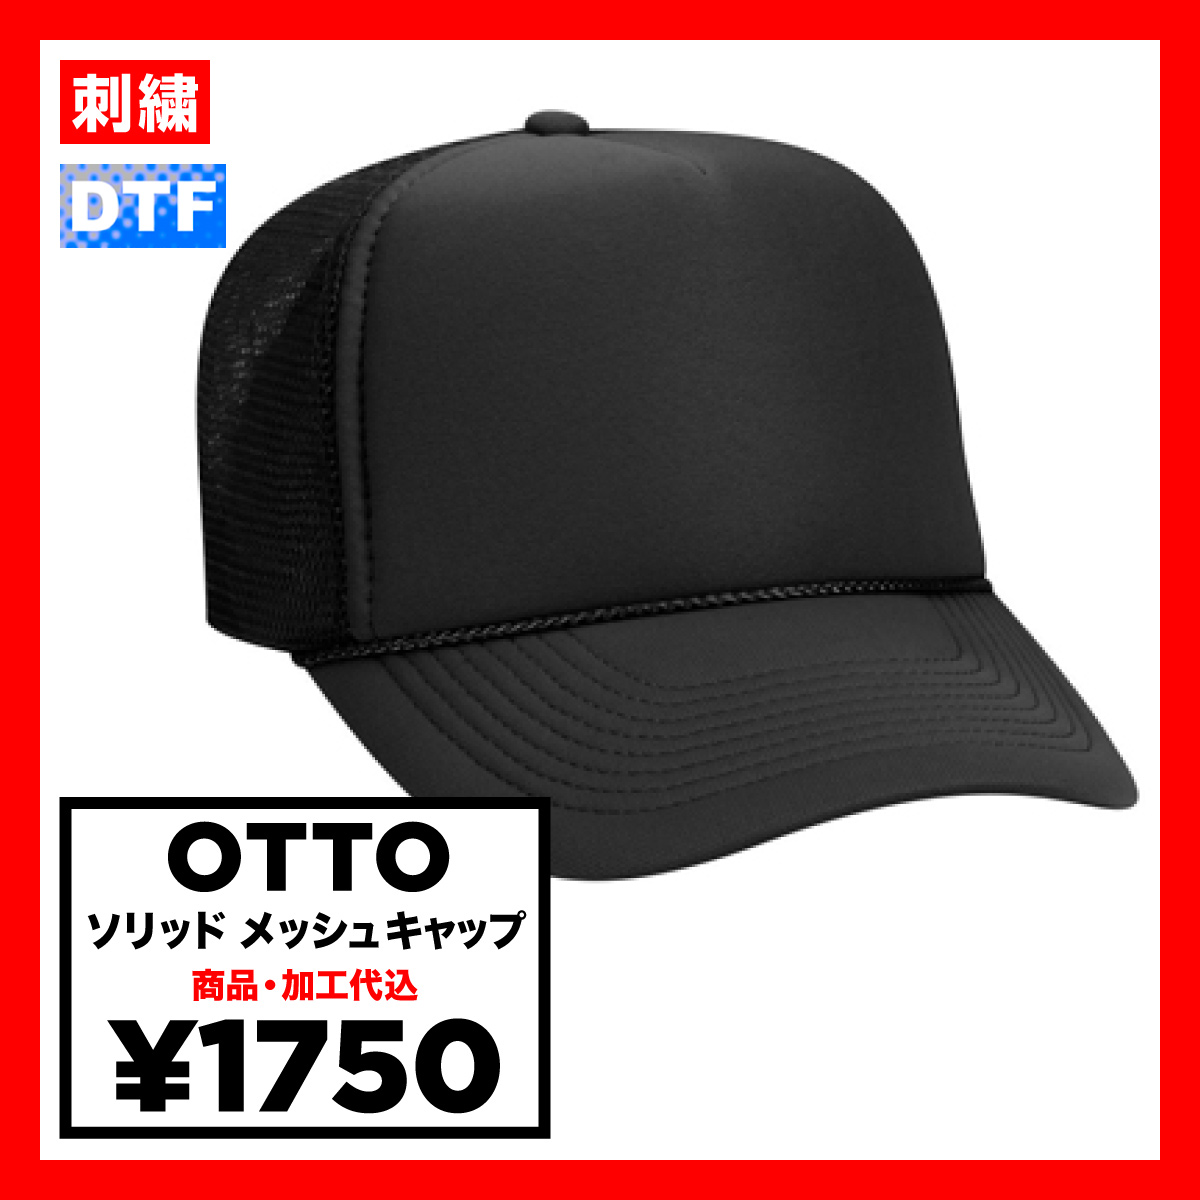 OTTO オットー ソリッドメッシュキャップ (品番OTTO-H0467)